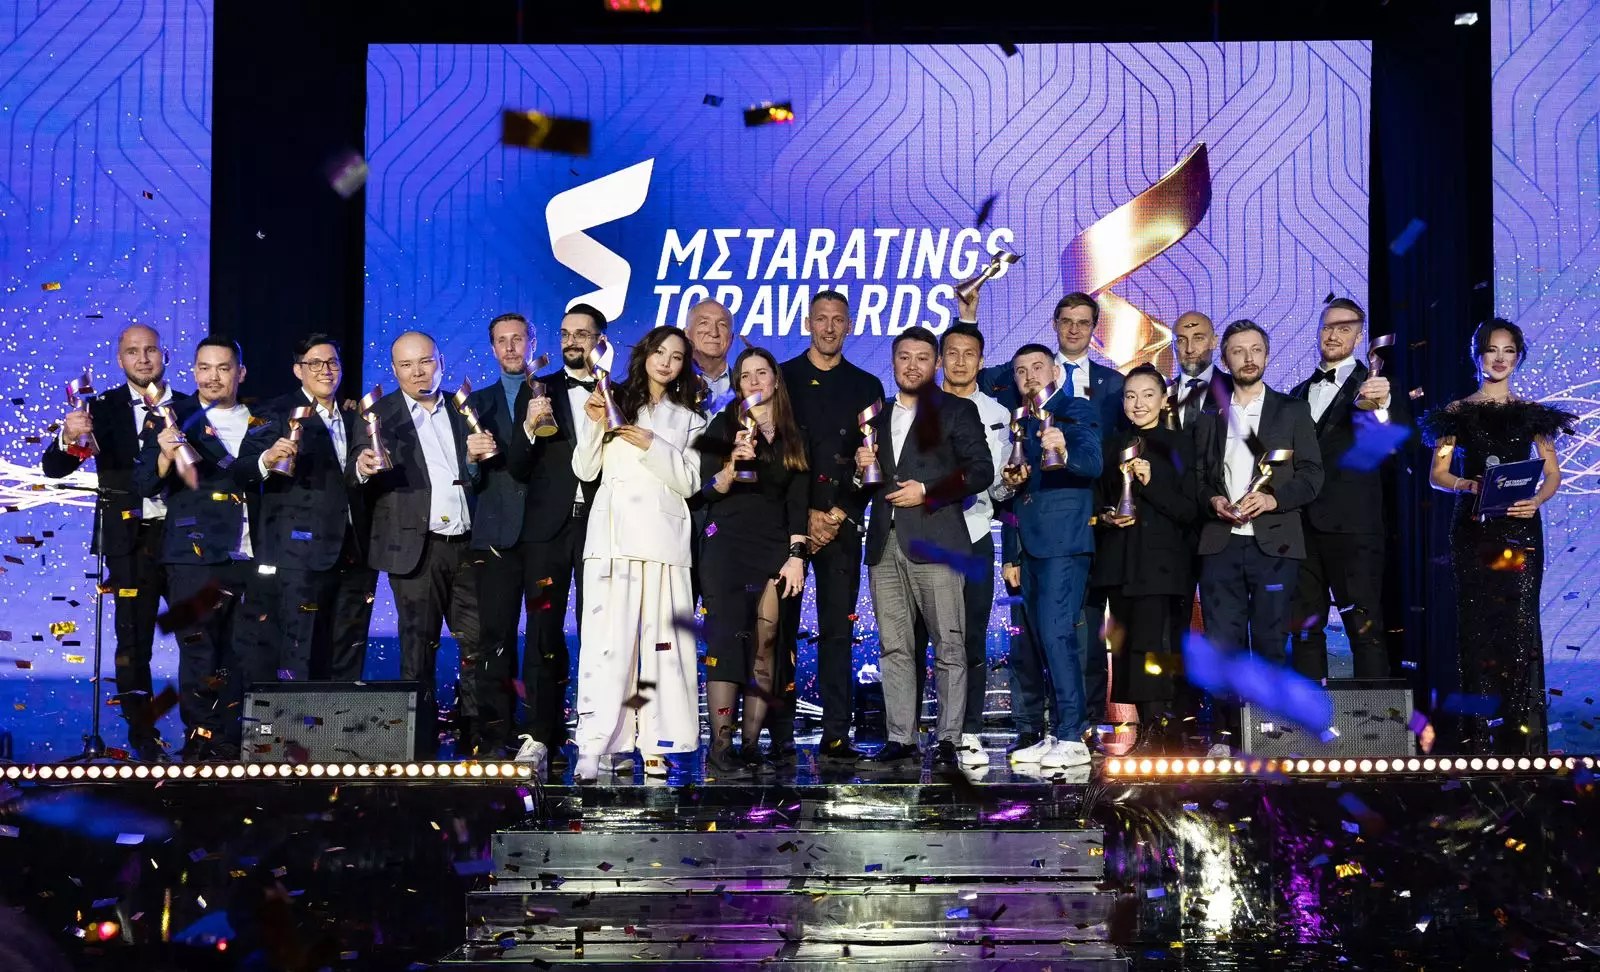 Metaratings Top Awards: Астанада Қазақстанның спорт жəне бизнес саласындағы үздіктері марапатталды